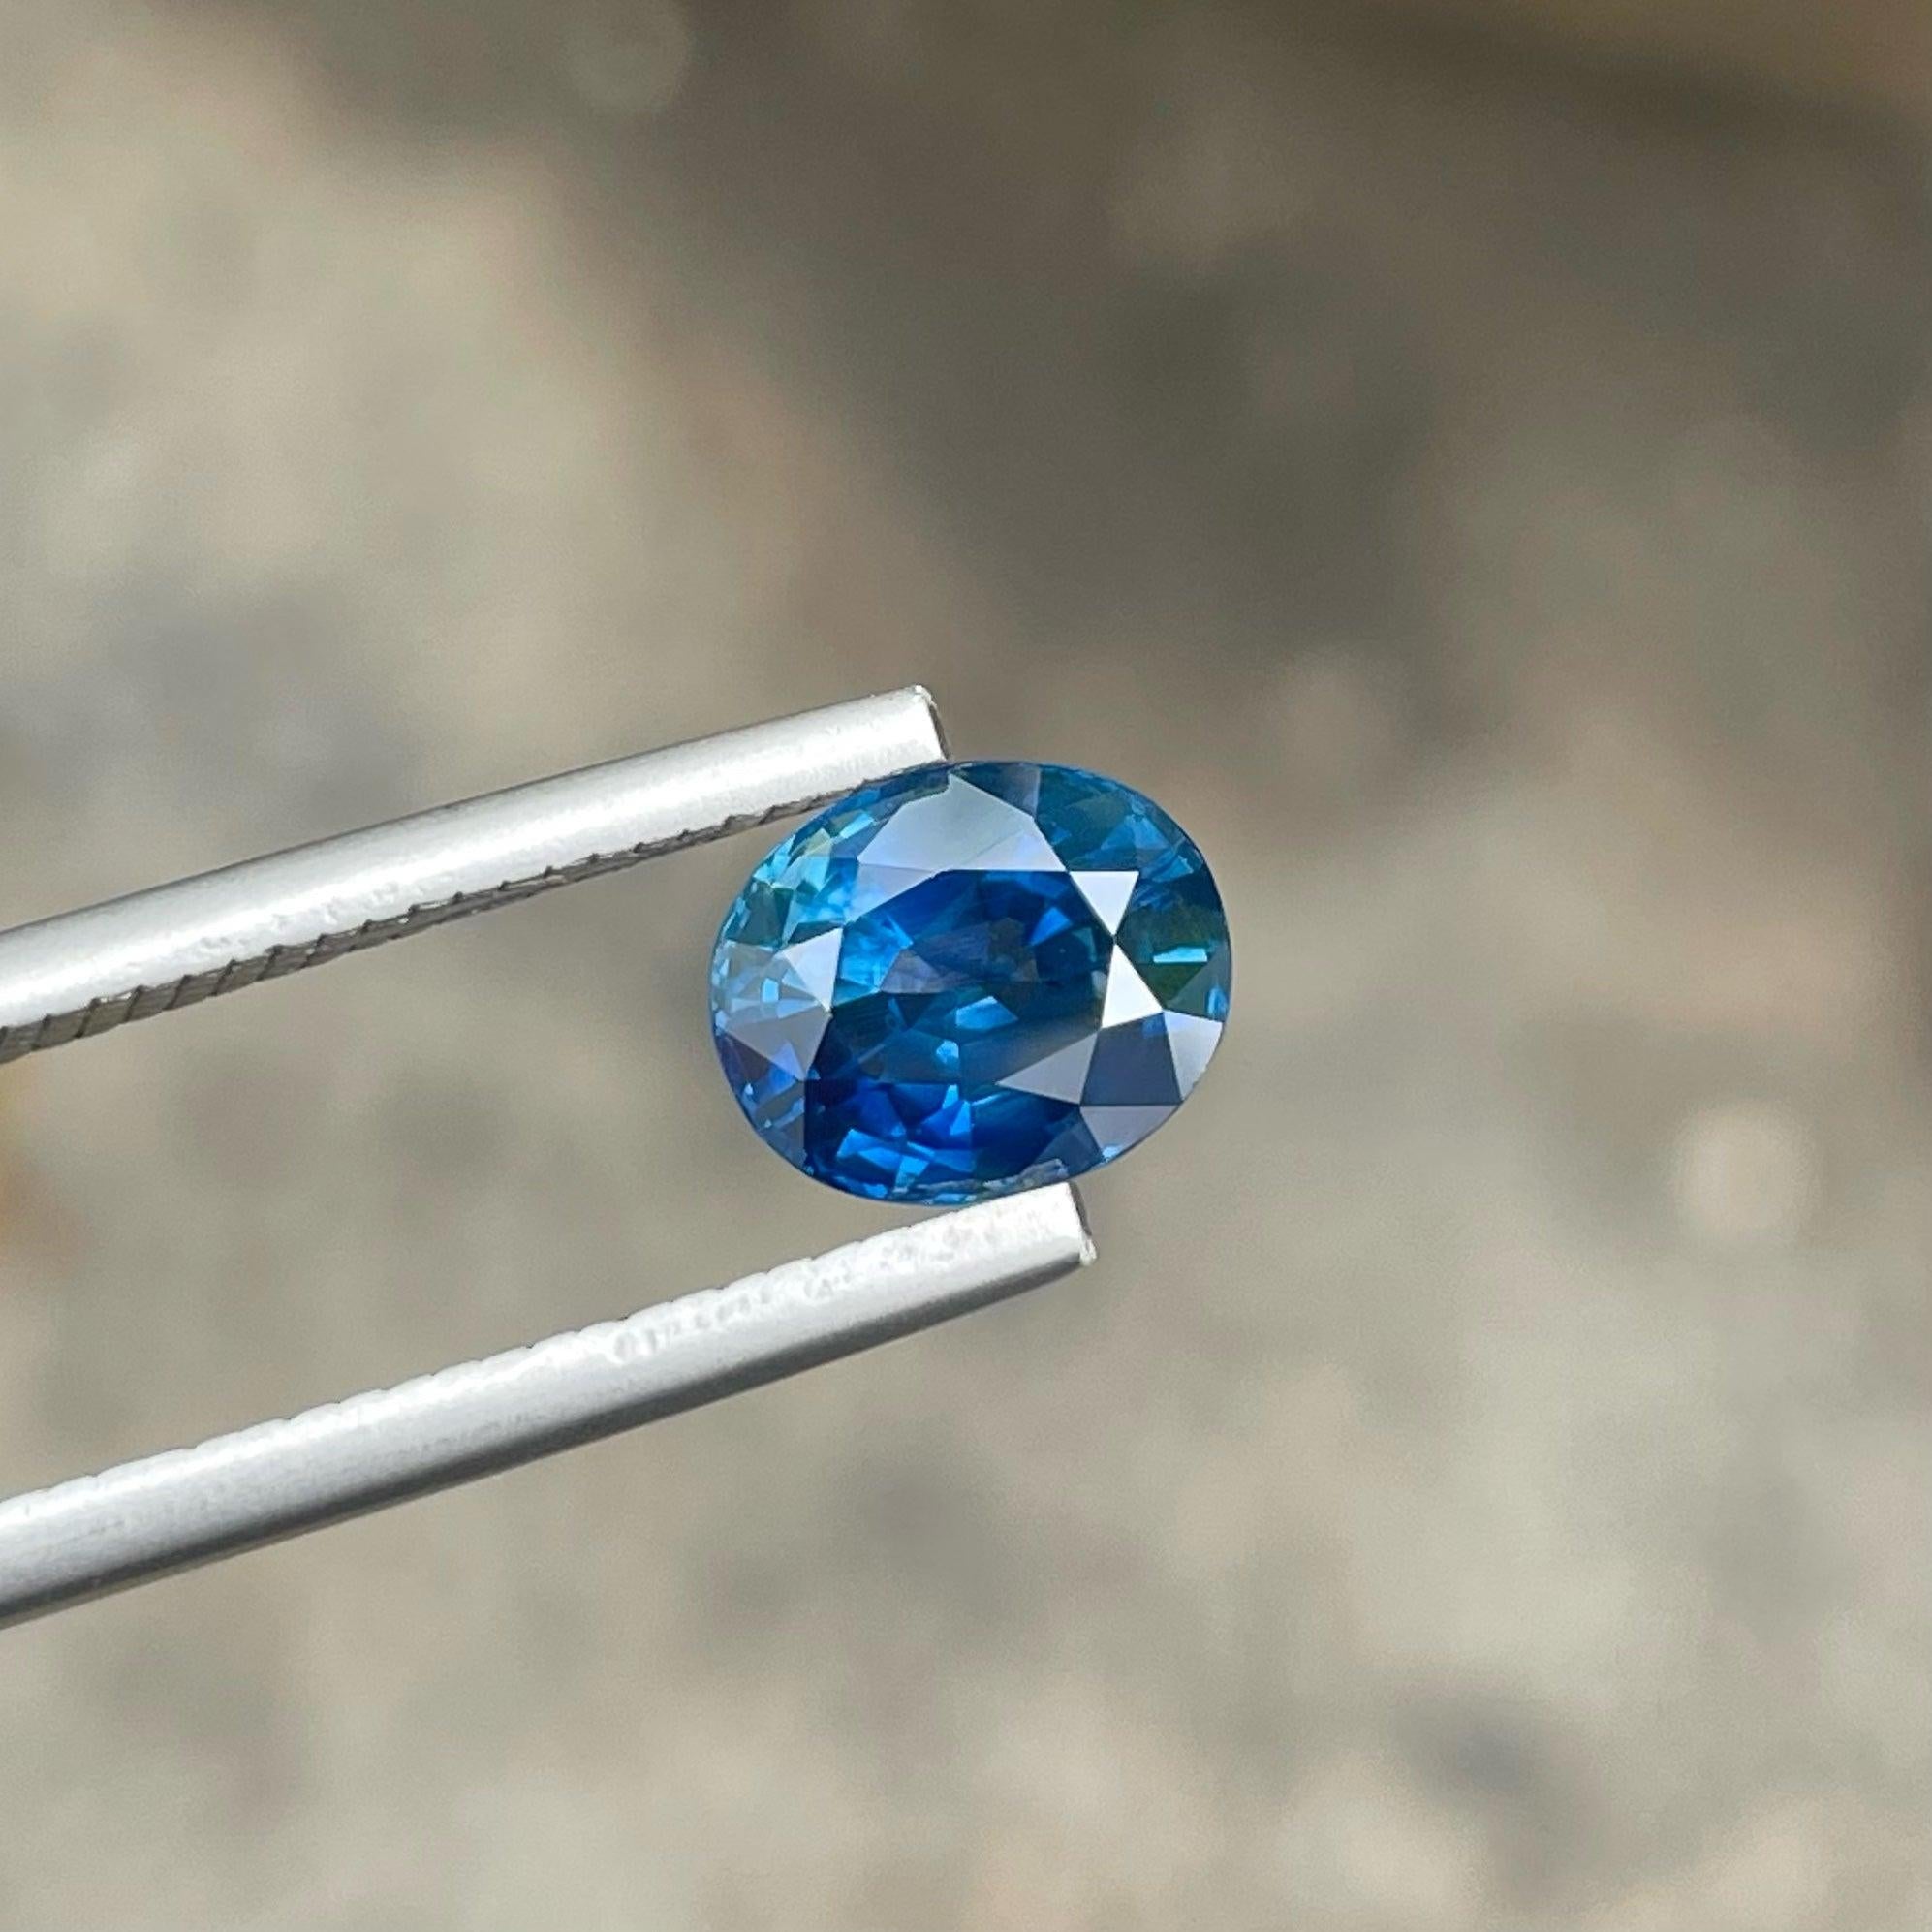 Fabulous Natural Ceylon Sapphire Edelstein von 2,25 Karat aus Srilanka hat einen wunderbaren Schliff in einem Oval Form, unglaubliche blaue Farbe, große Brillanz. Dieser Edelstein ist völlig VVS Clarity.

Informationen zum